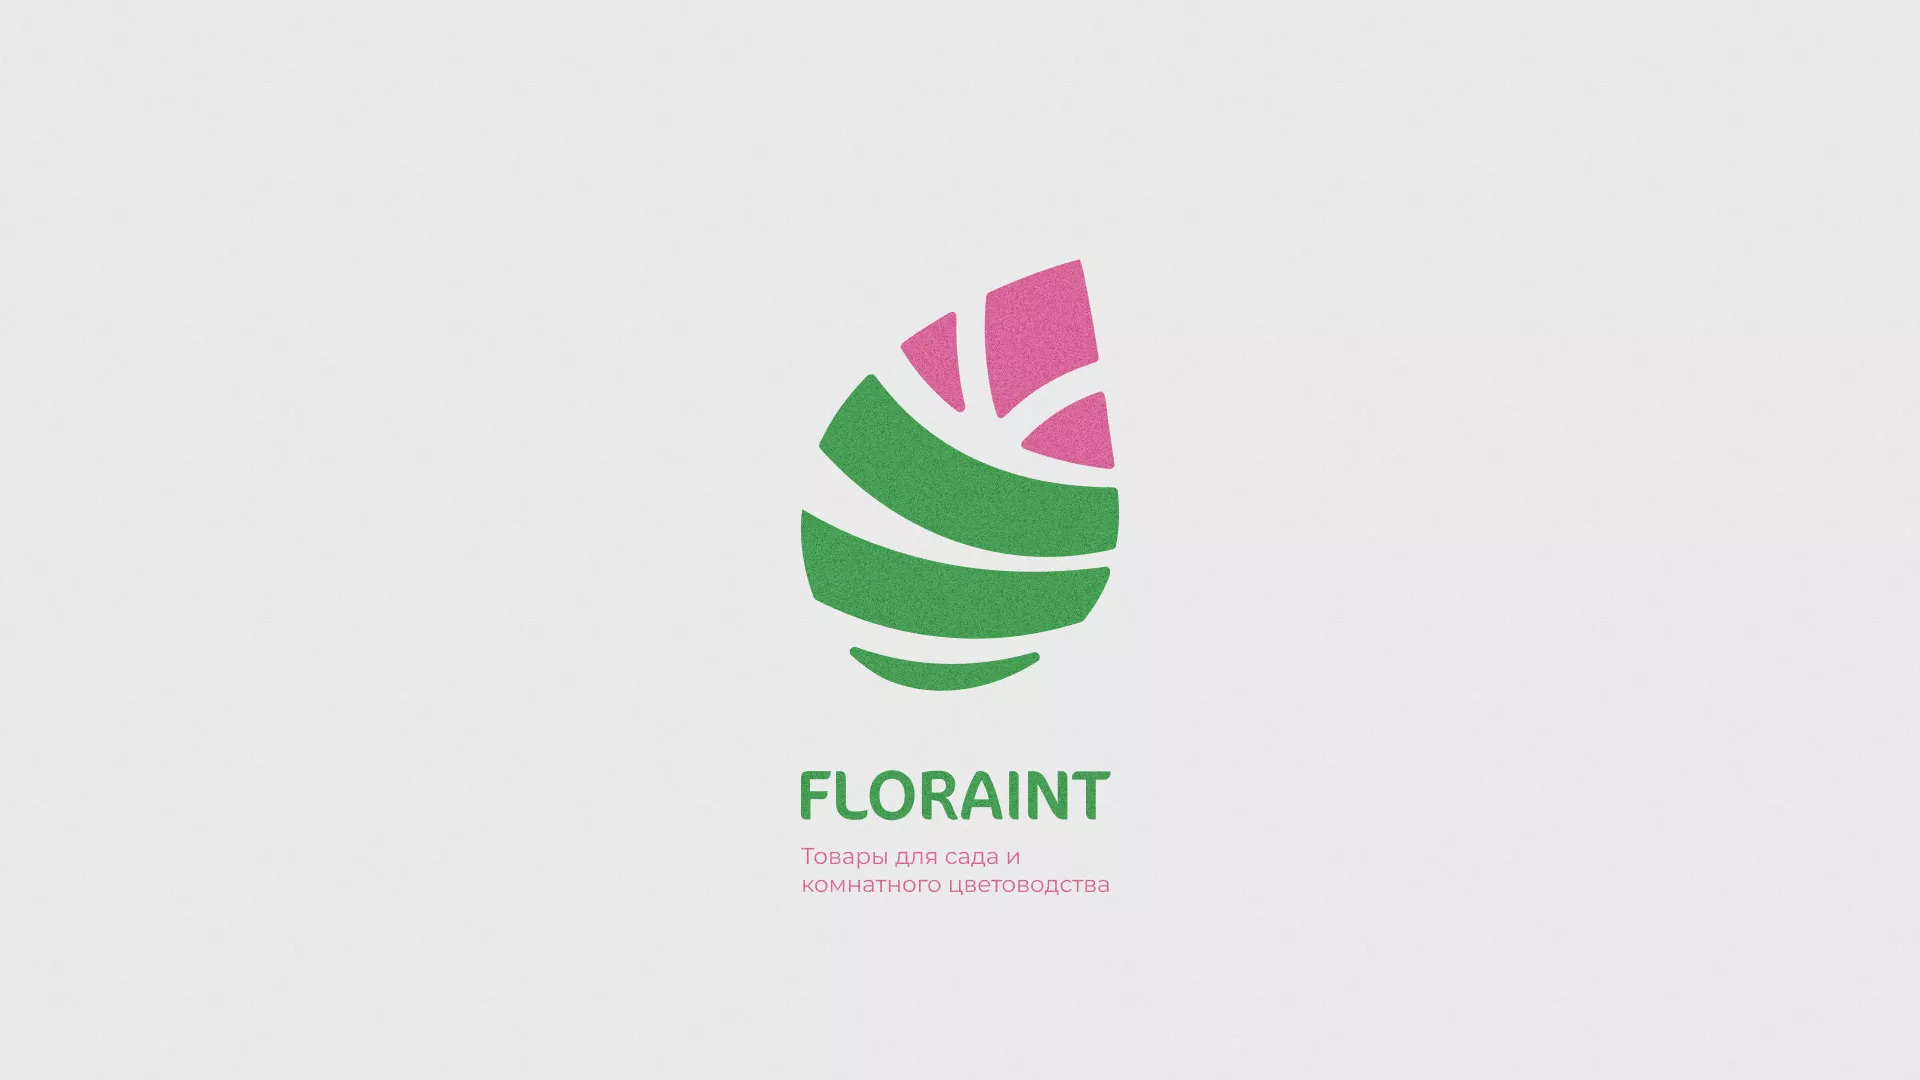 Разработка оформления профиля Instagram для магазина «Floraint» в Каргополе